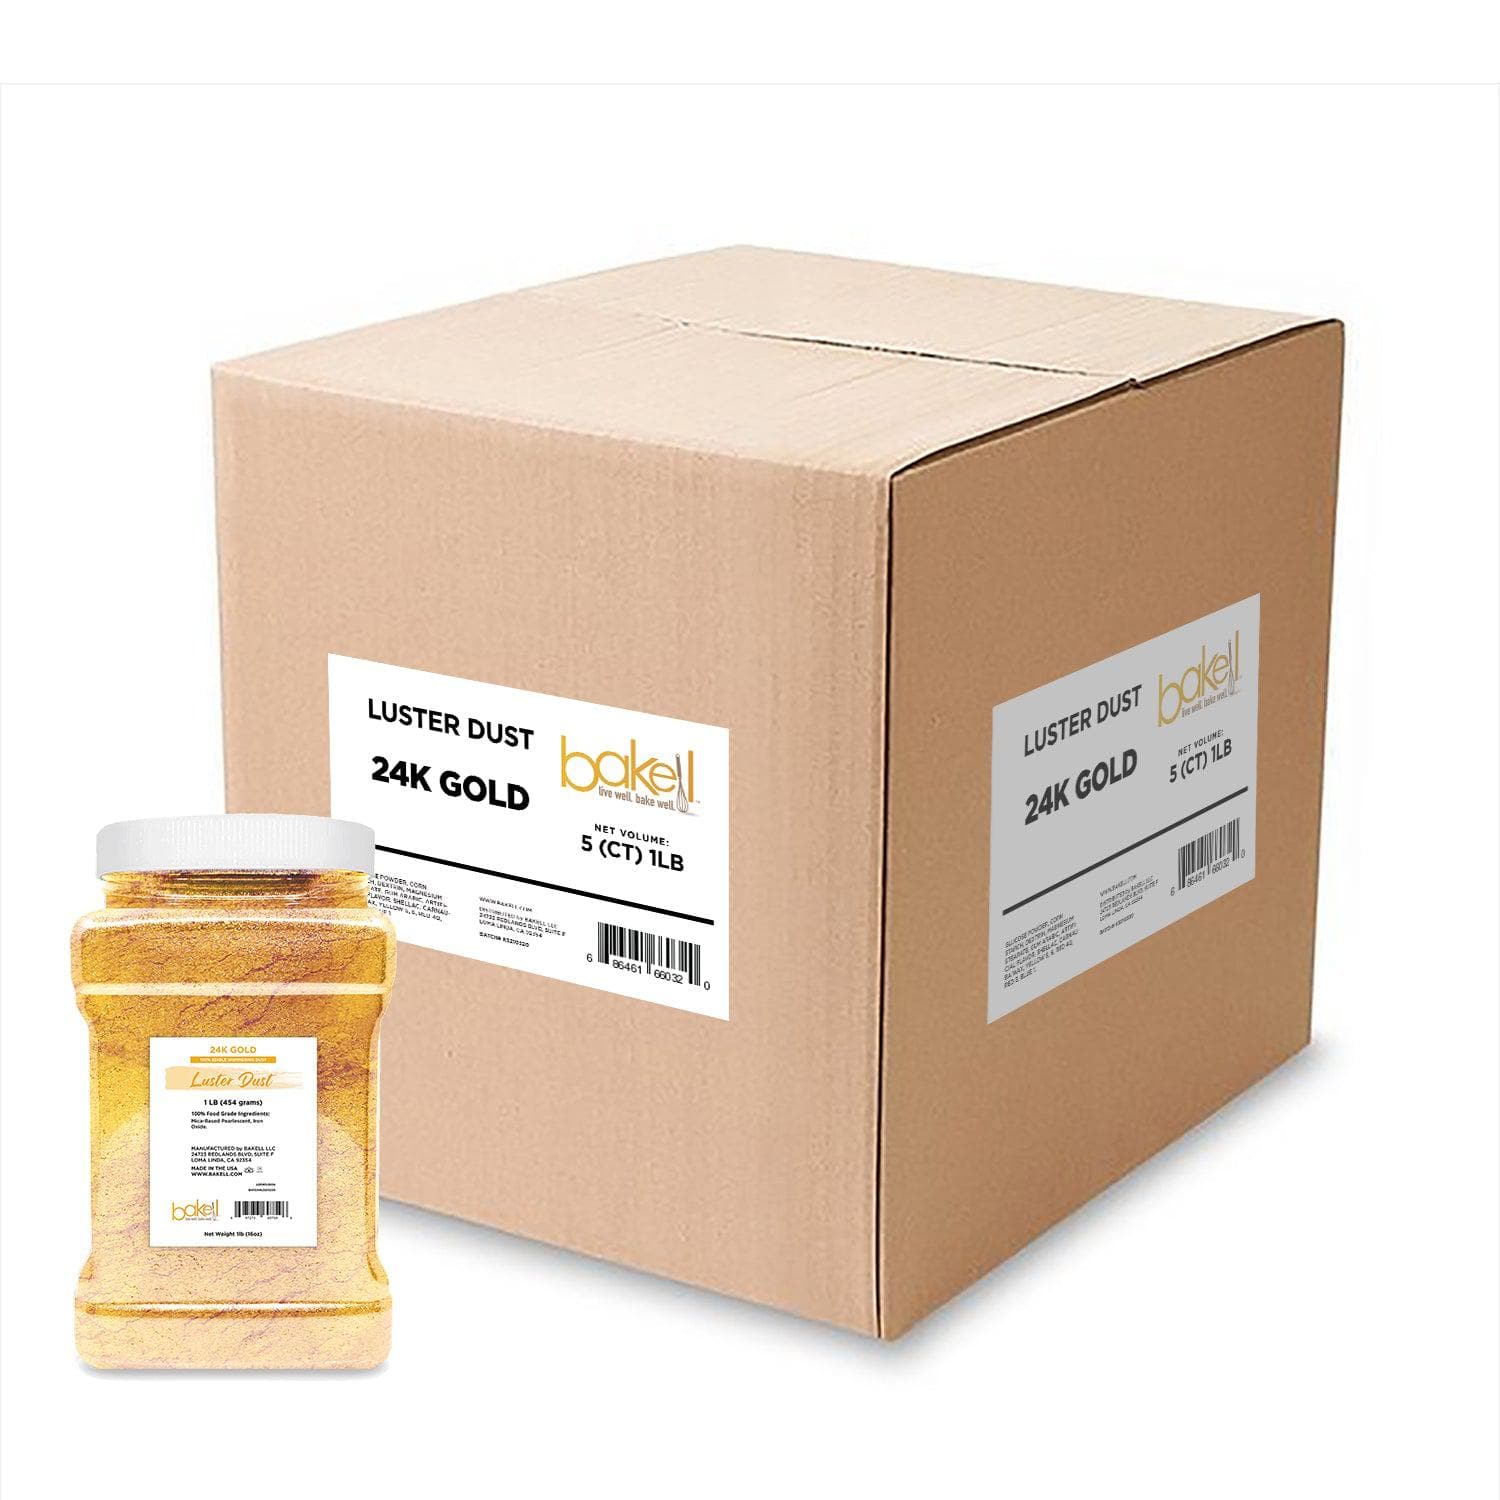 24K Gold Luster Dust Wholesale | Bakell.com